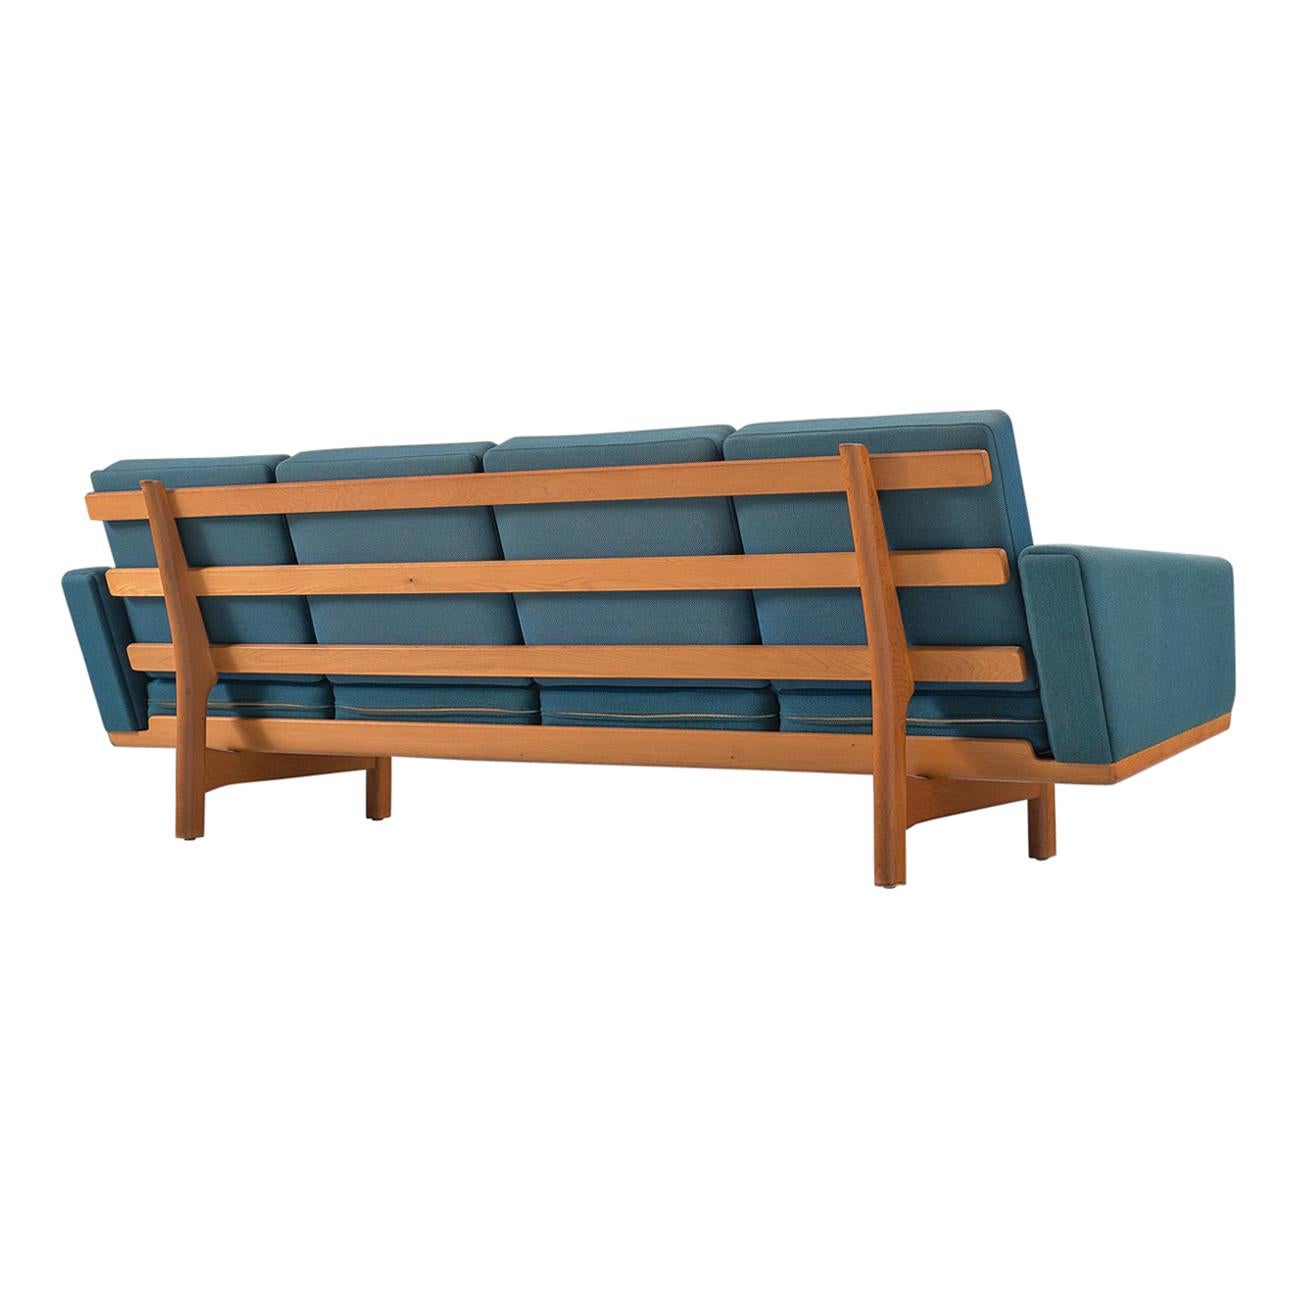 Hans Wegner Sofa in Oak and Petrol Upholstery for GETAMA